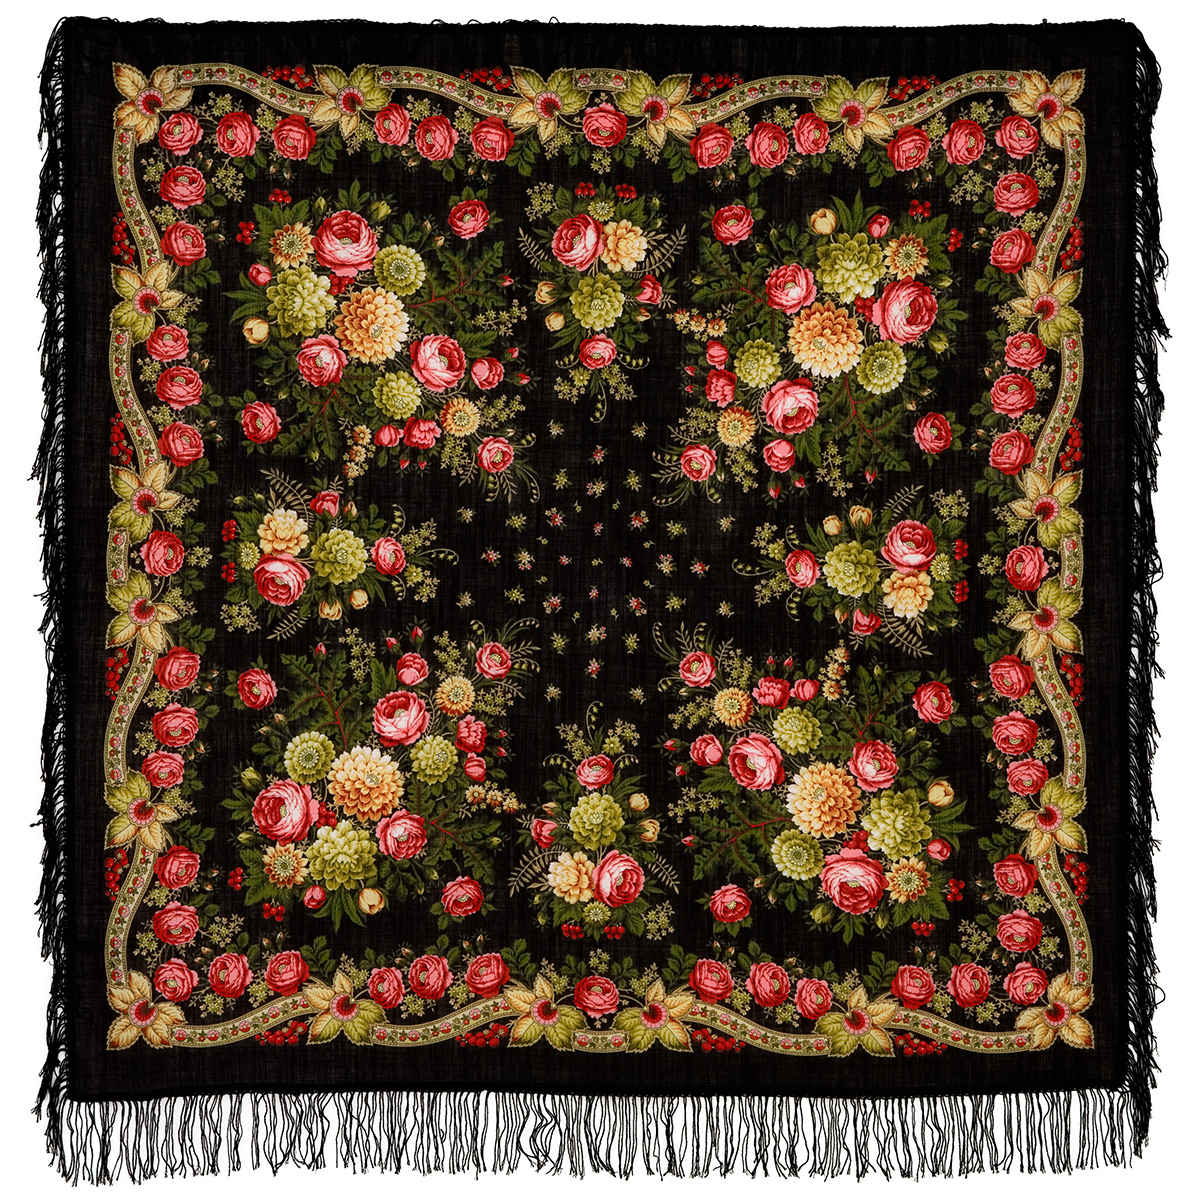 Платок женский Павловопосадский платок 1194 черный/розовый/желтый, 125х125 см